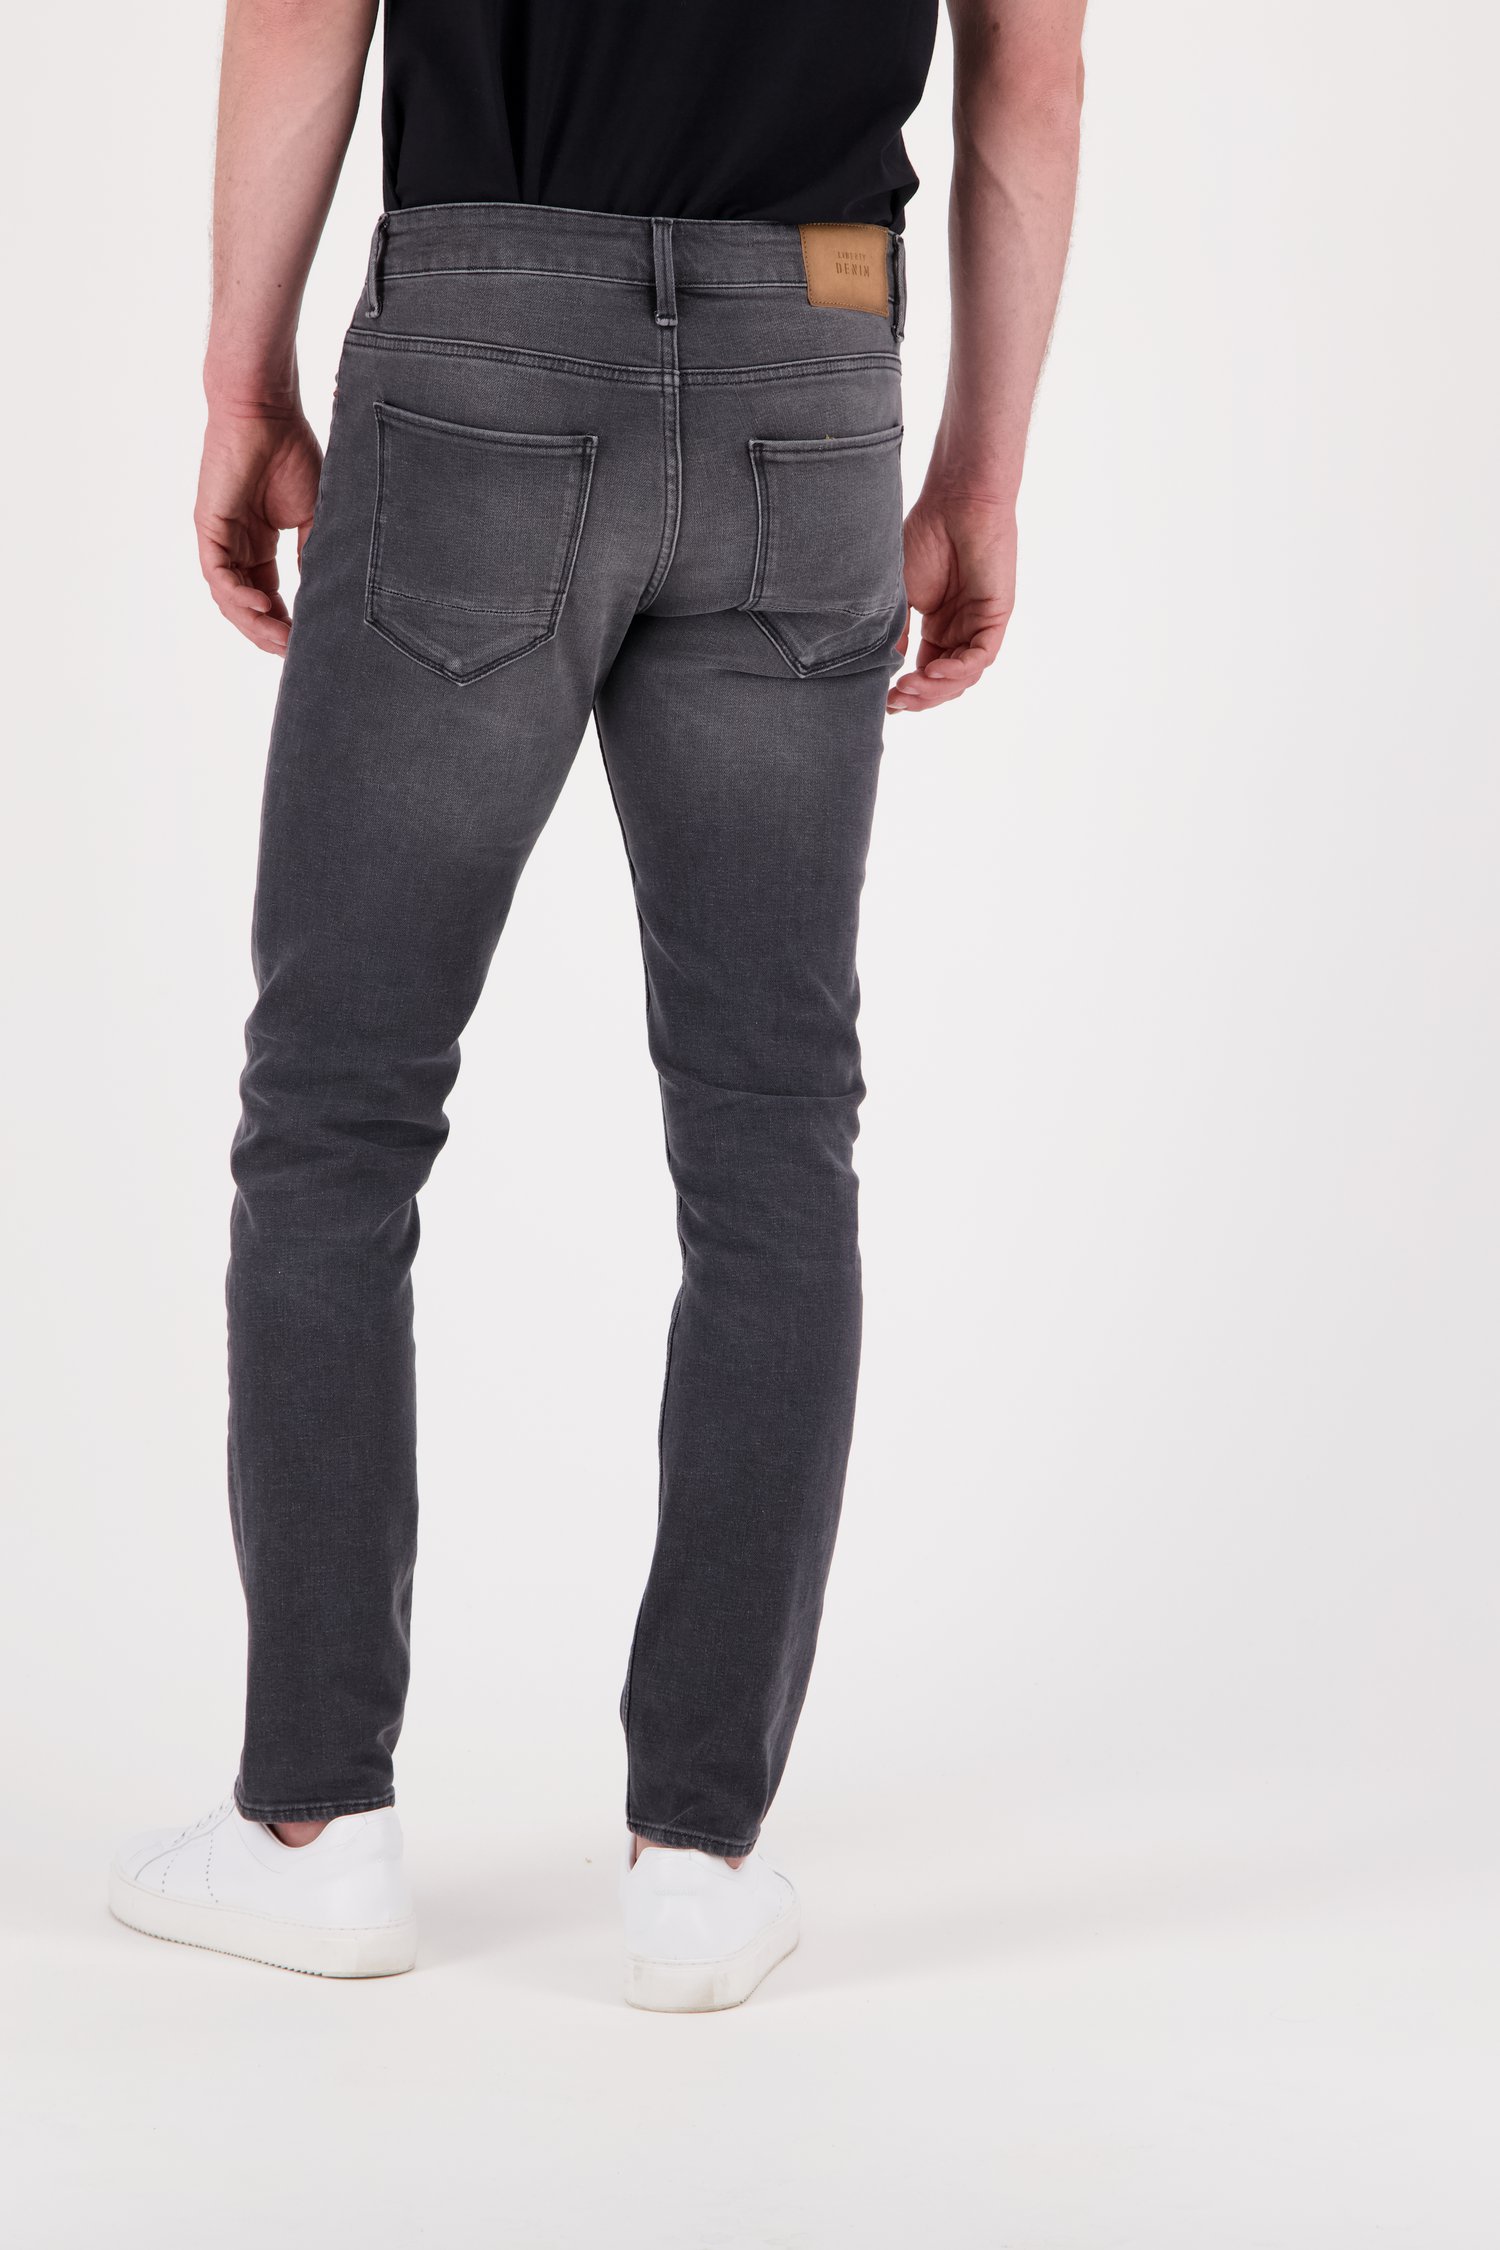 Jeans gris - Tim – slim fit - L34  de Liberty Island Denim pour Hommes